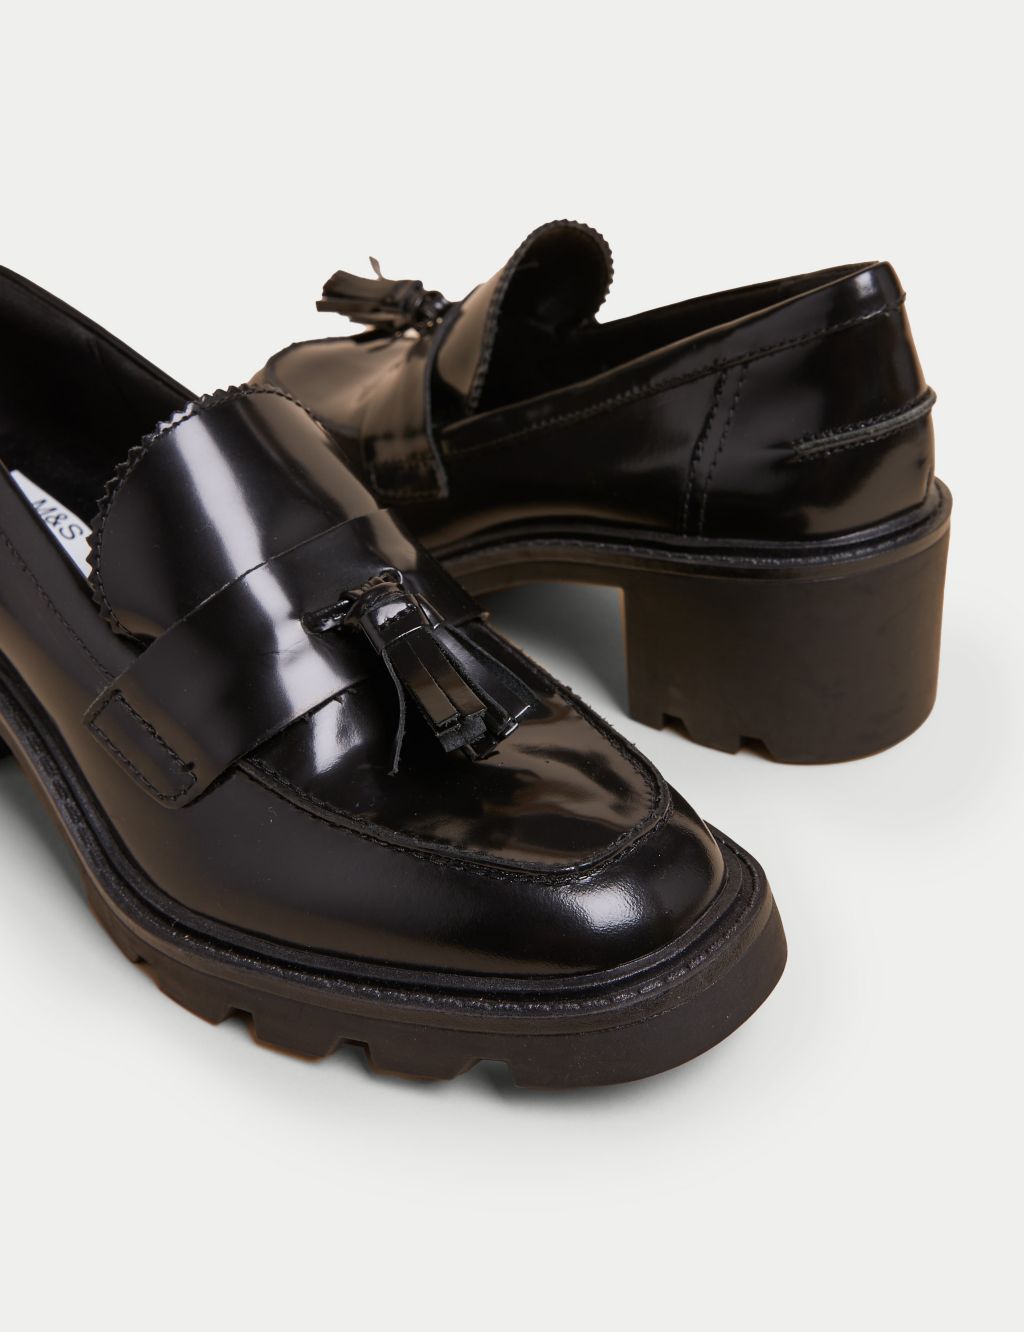 Leather Tassel Block Heel Loafers image 3